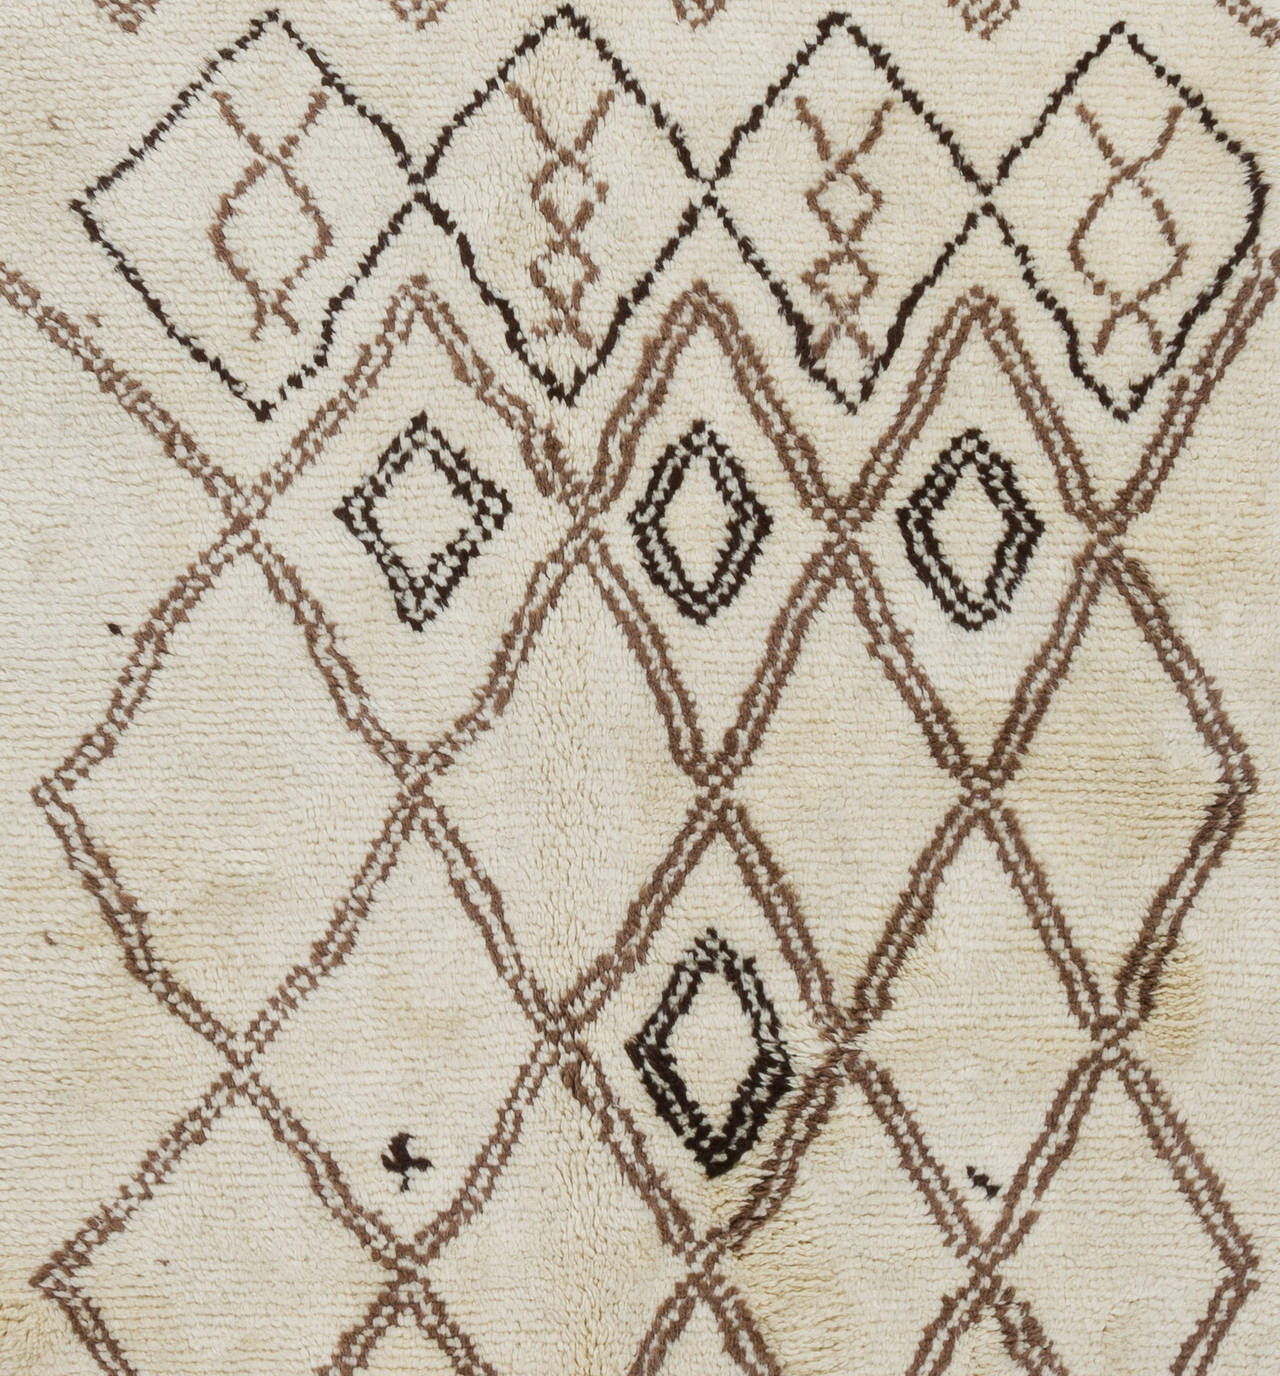 Ein moderner, handgeknüpfter marokkanischer Teppich mit dickem Flor aus natürlicher, ungefärbter elfenbeinfarbener/cremefarbener und brauner Wolle. Sehr weich und bequem, ein Vergnügen, darauf zu laufen oder zu liegen. Erhältlich so wie er ist, in